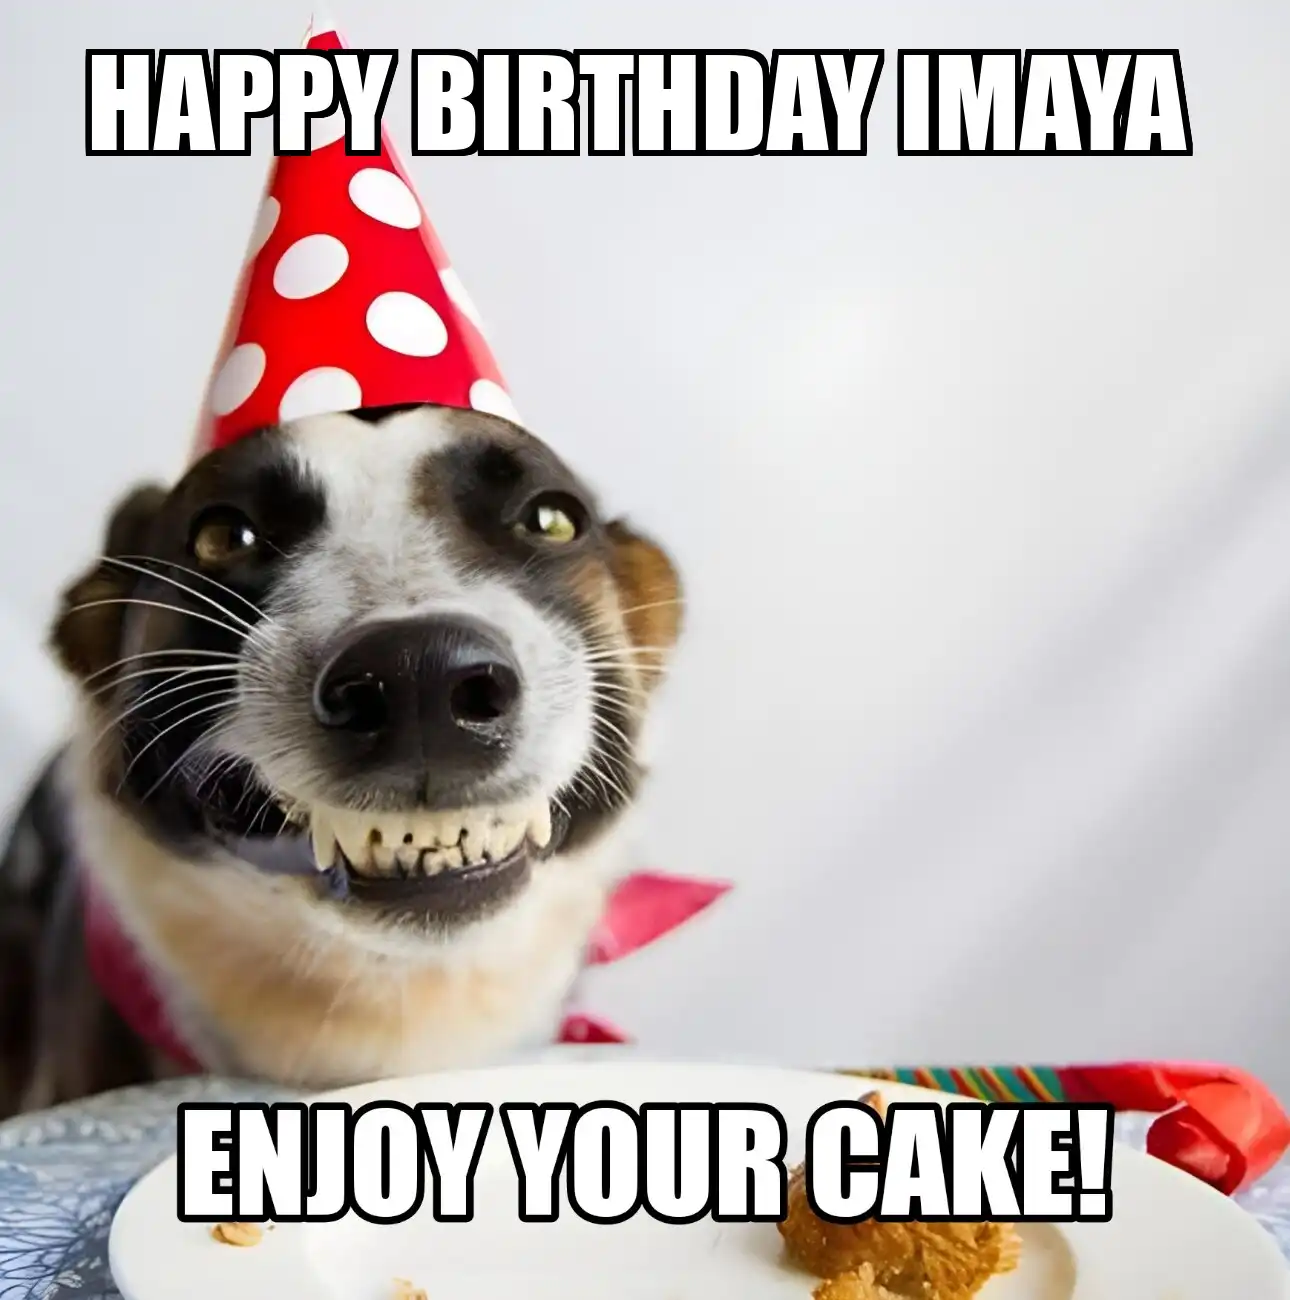 Happy Birthday Imaya Enjoy Your Cake Dog Meme